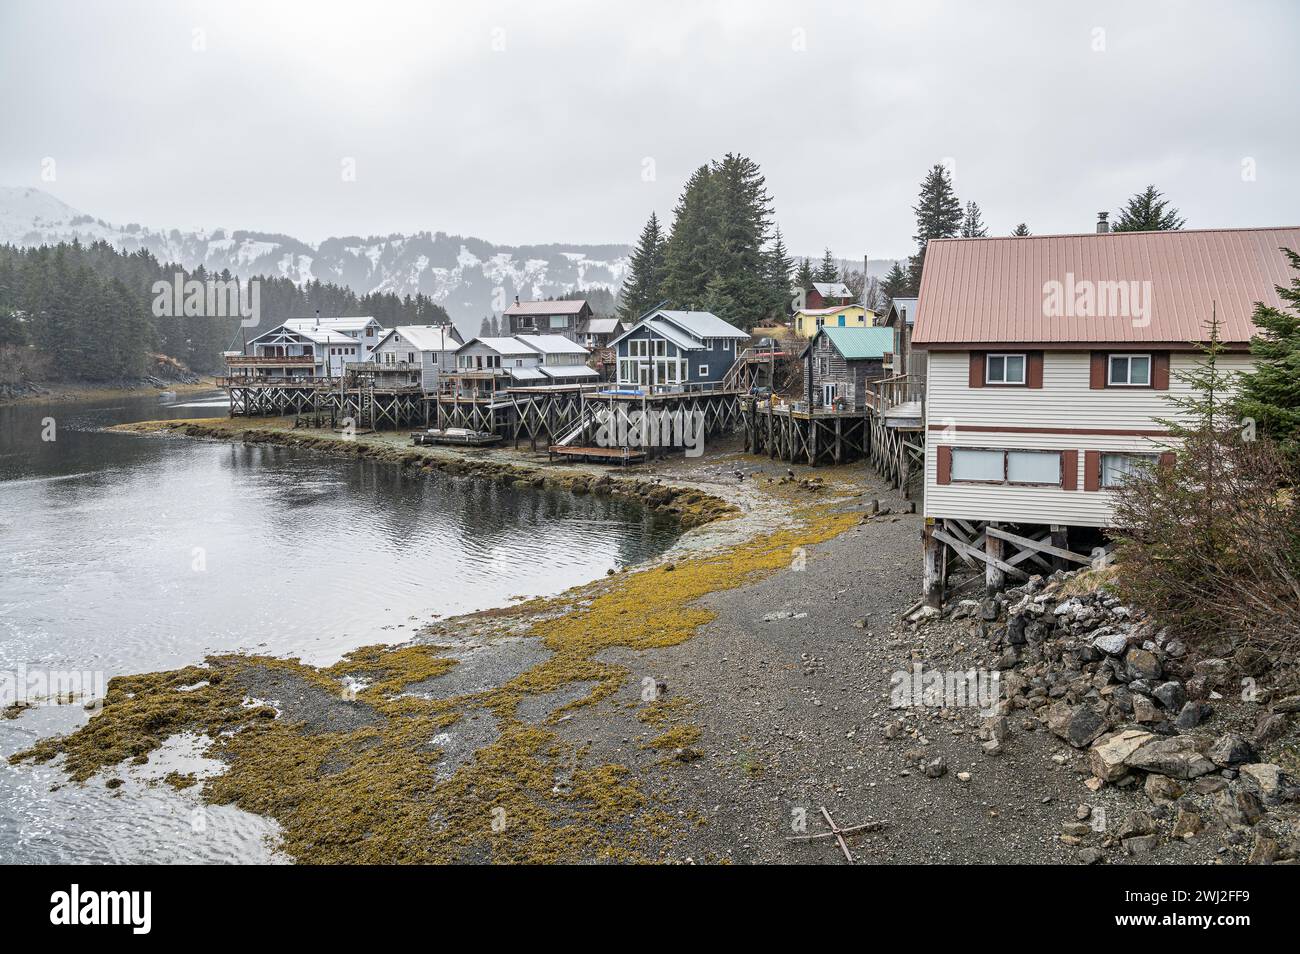 Riverside Häuser mit Blick auf den Slough von Seldovia mit Fischern, die ihren Fang säubern und Weißkopfseeadlern, die die Überreste fressen, Seldovia, Alaska, USA Stockfoto